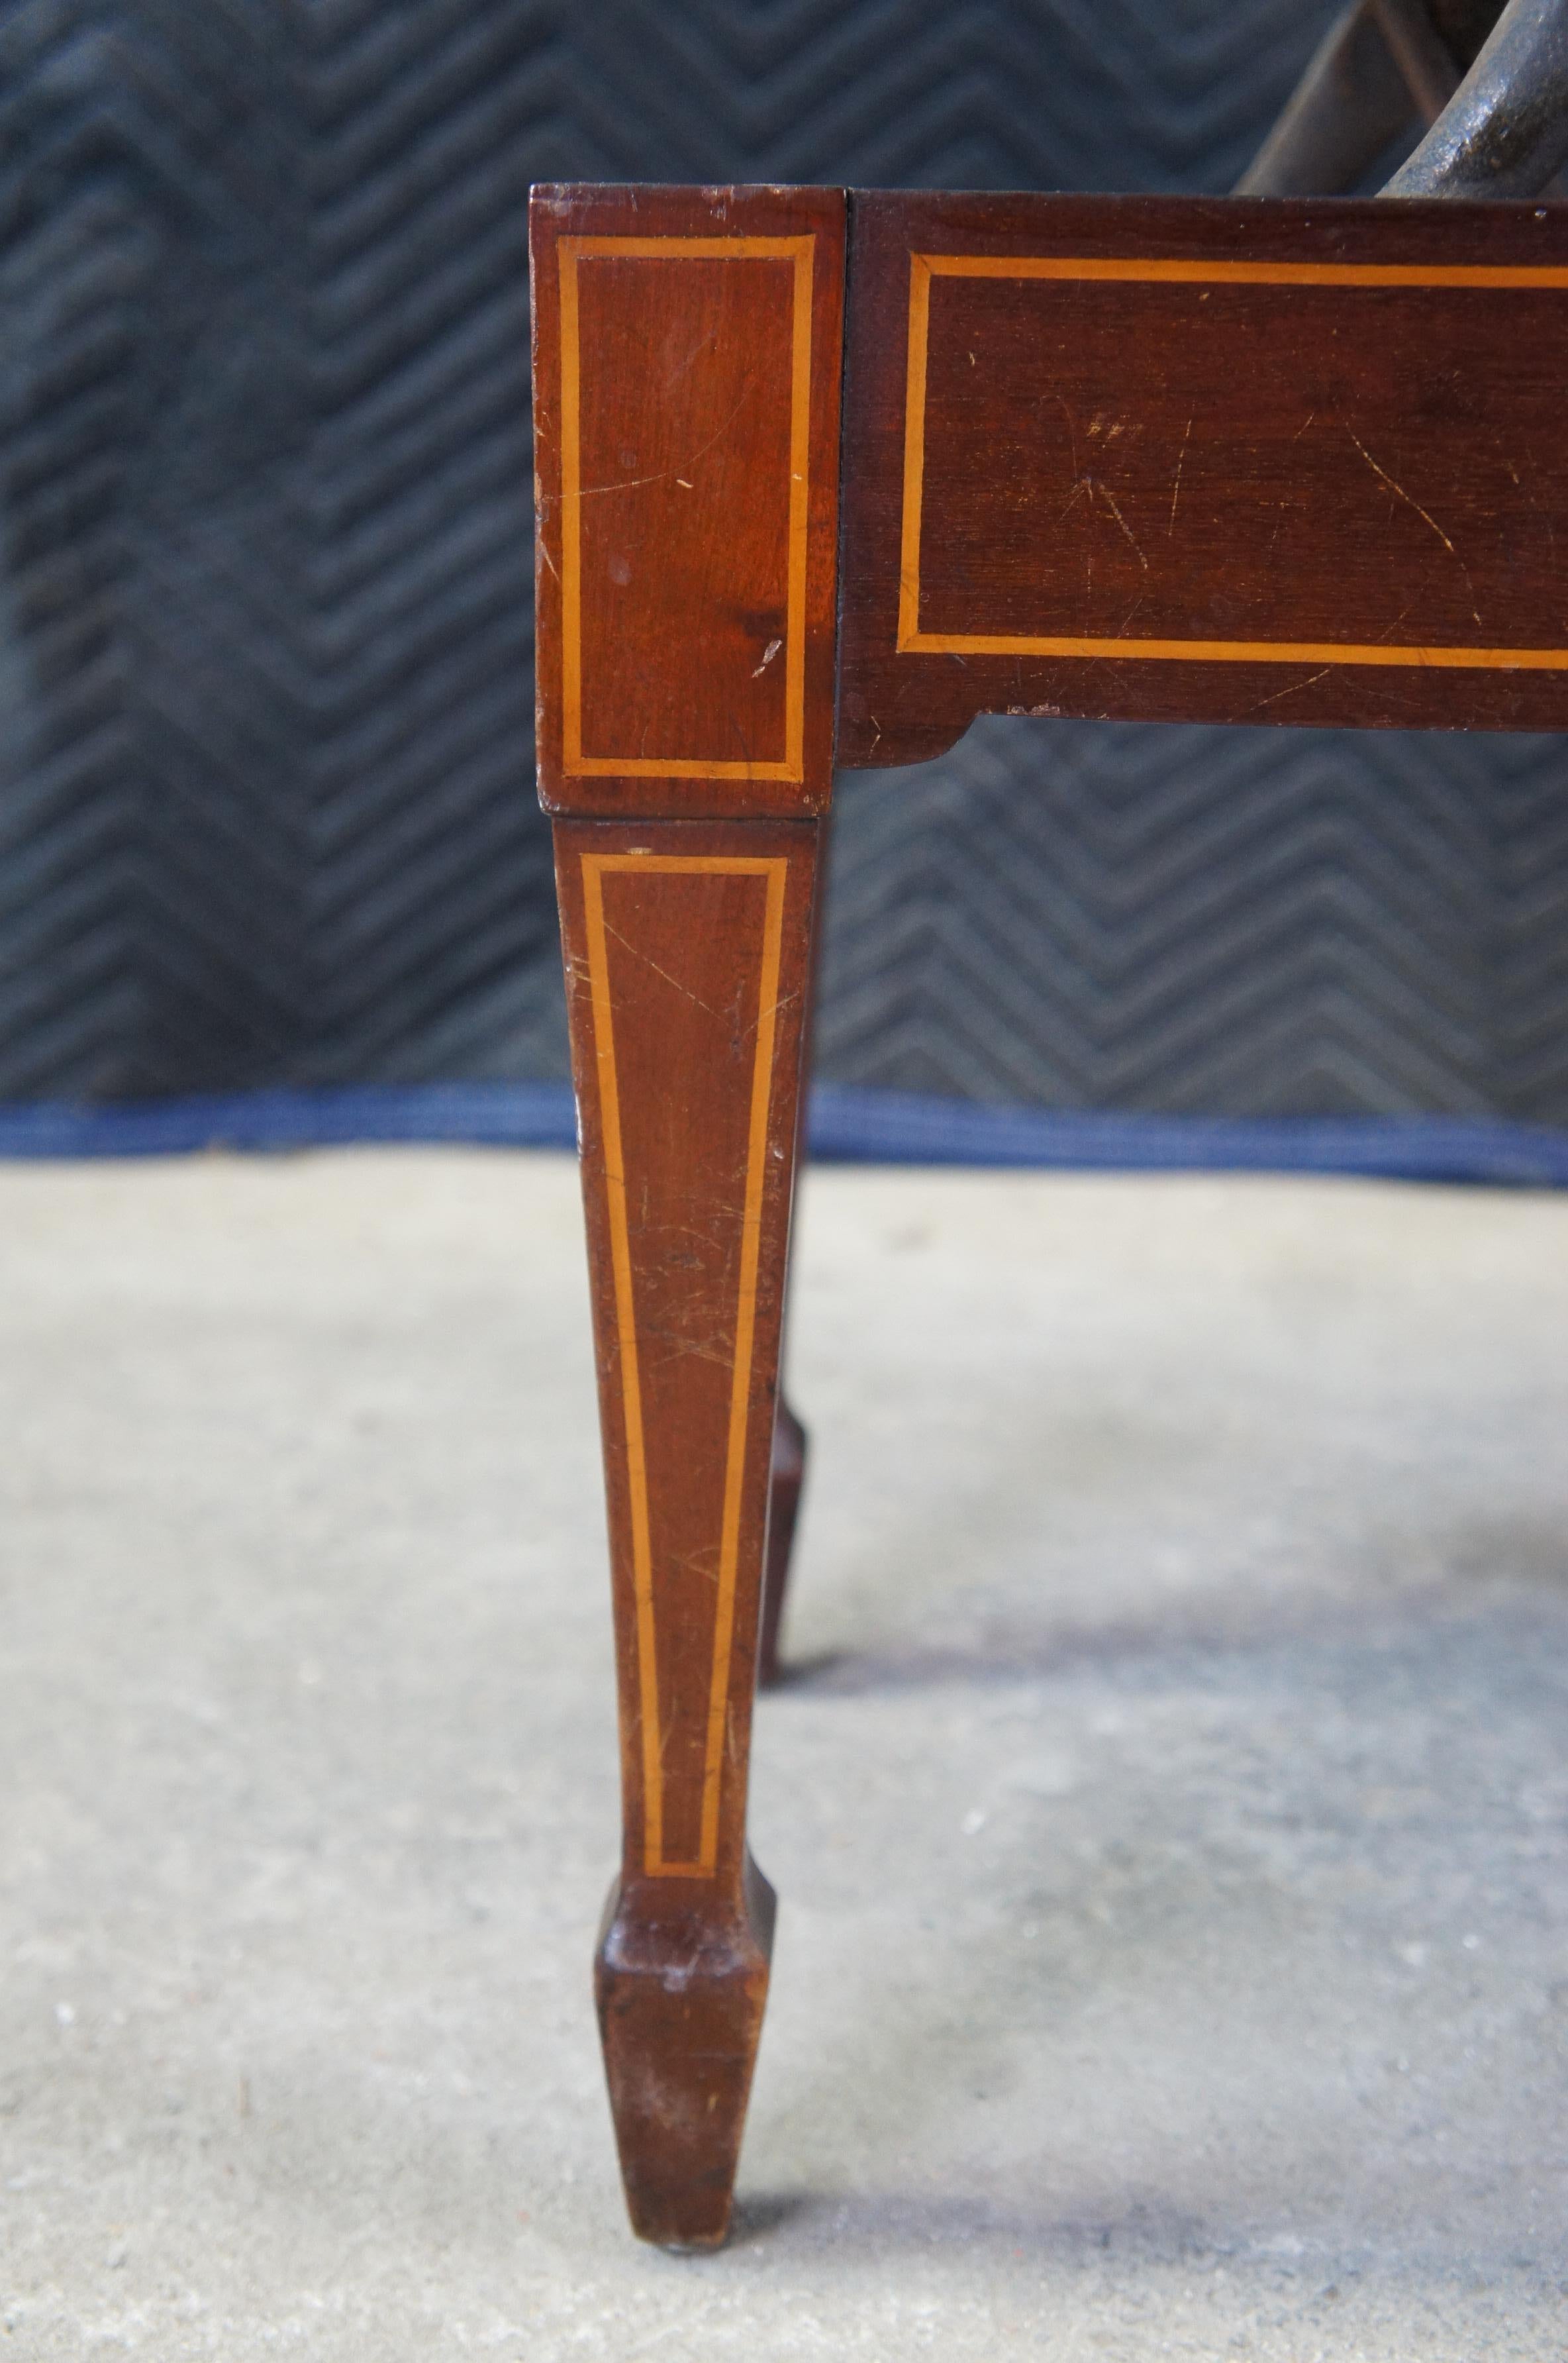 Antique English Edwardian Mahogany Inlaid Adjustable Piano Stool Storage Bench 1